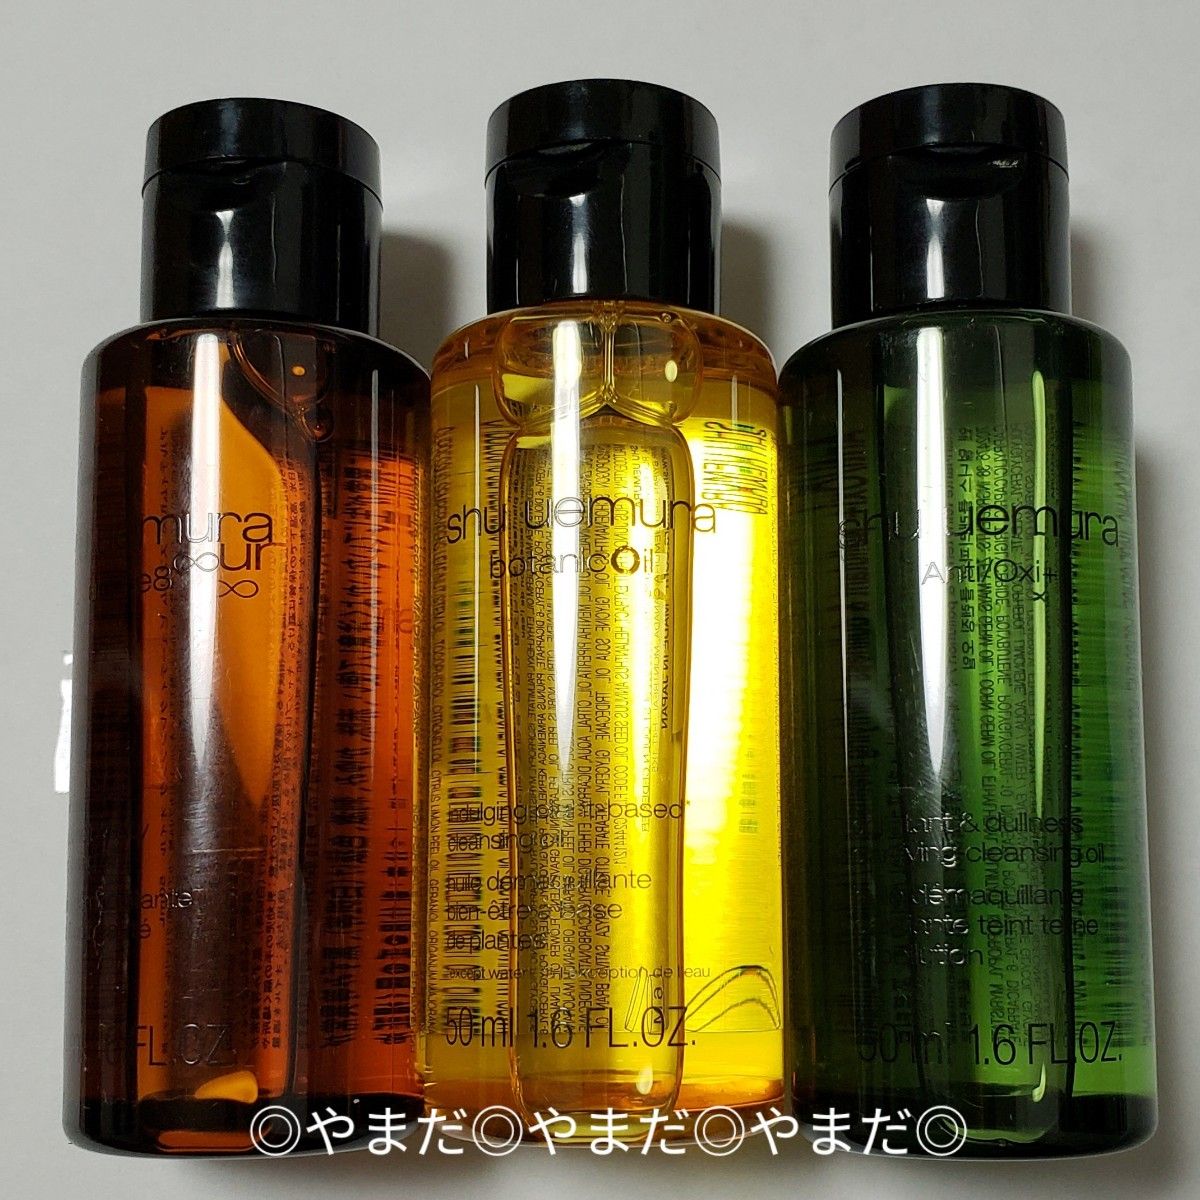 シュウウエムラ クレンジングオイル 3種類セット 基礎化粧品 